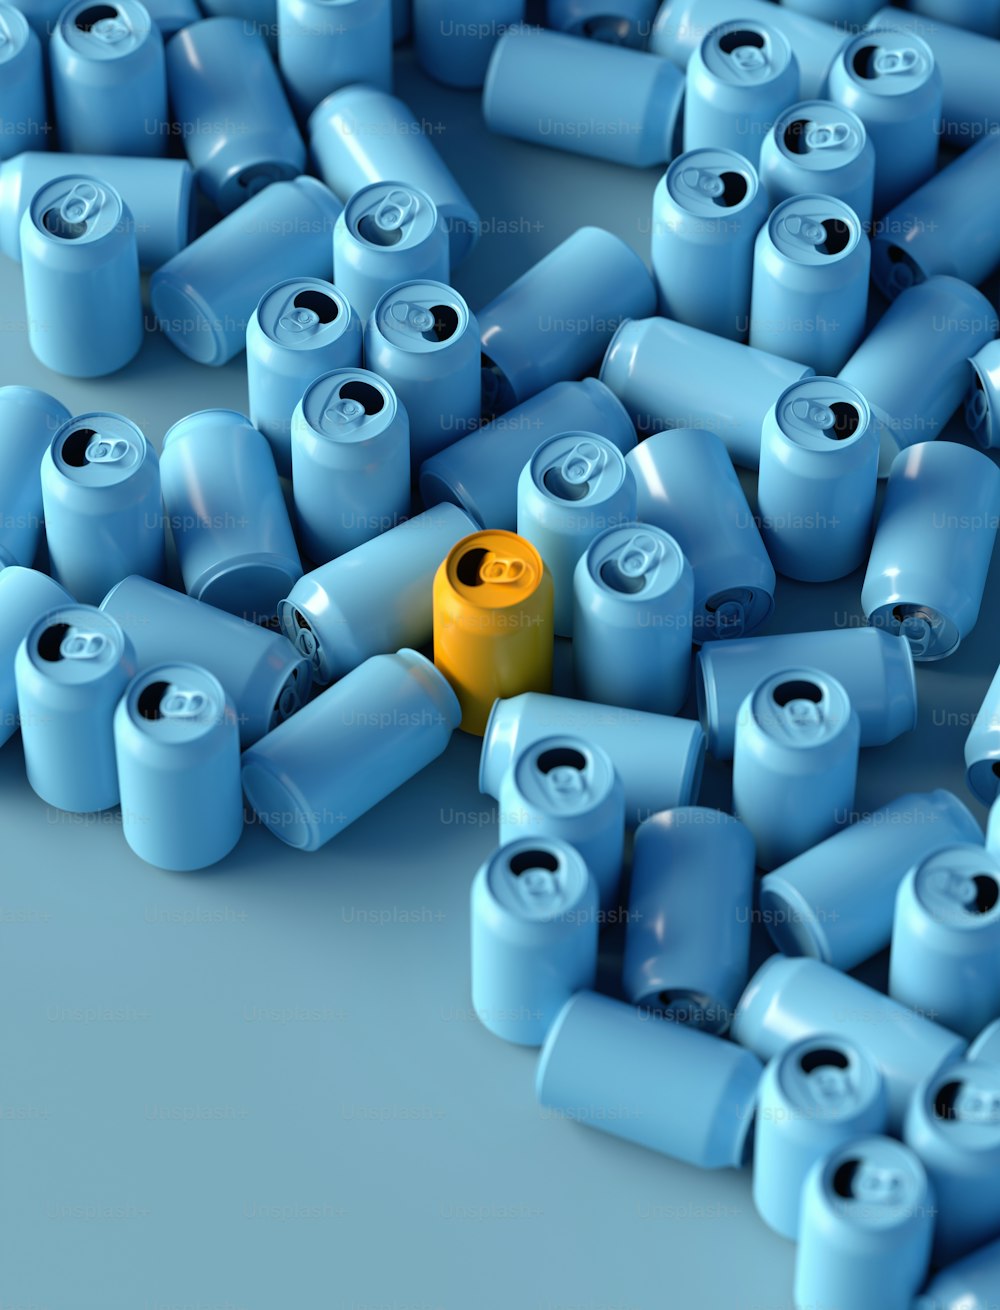 Un objet jaune est entouré de nombreux objets bleus